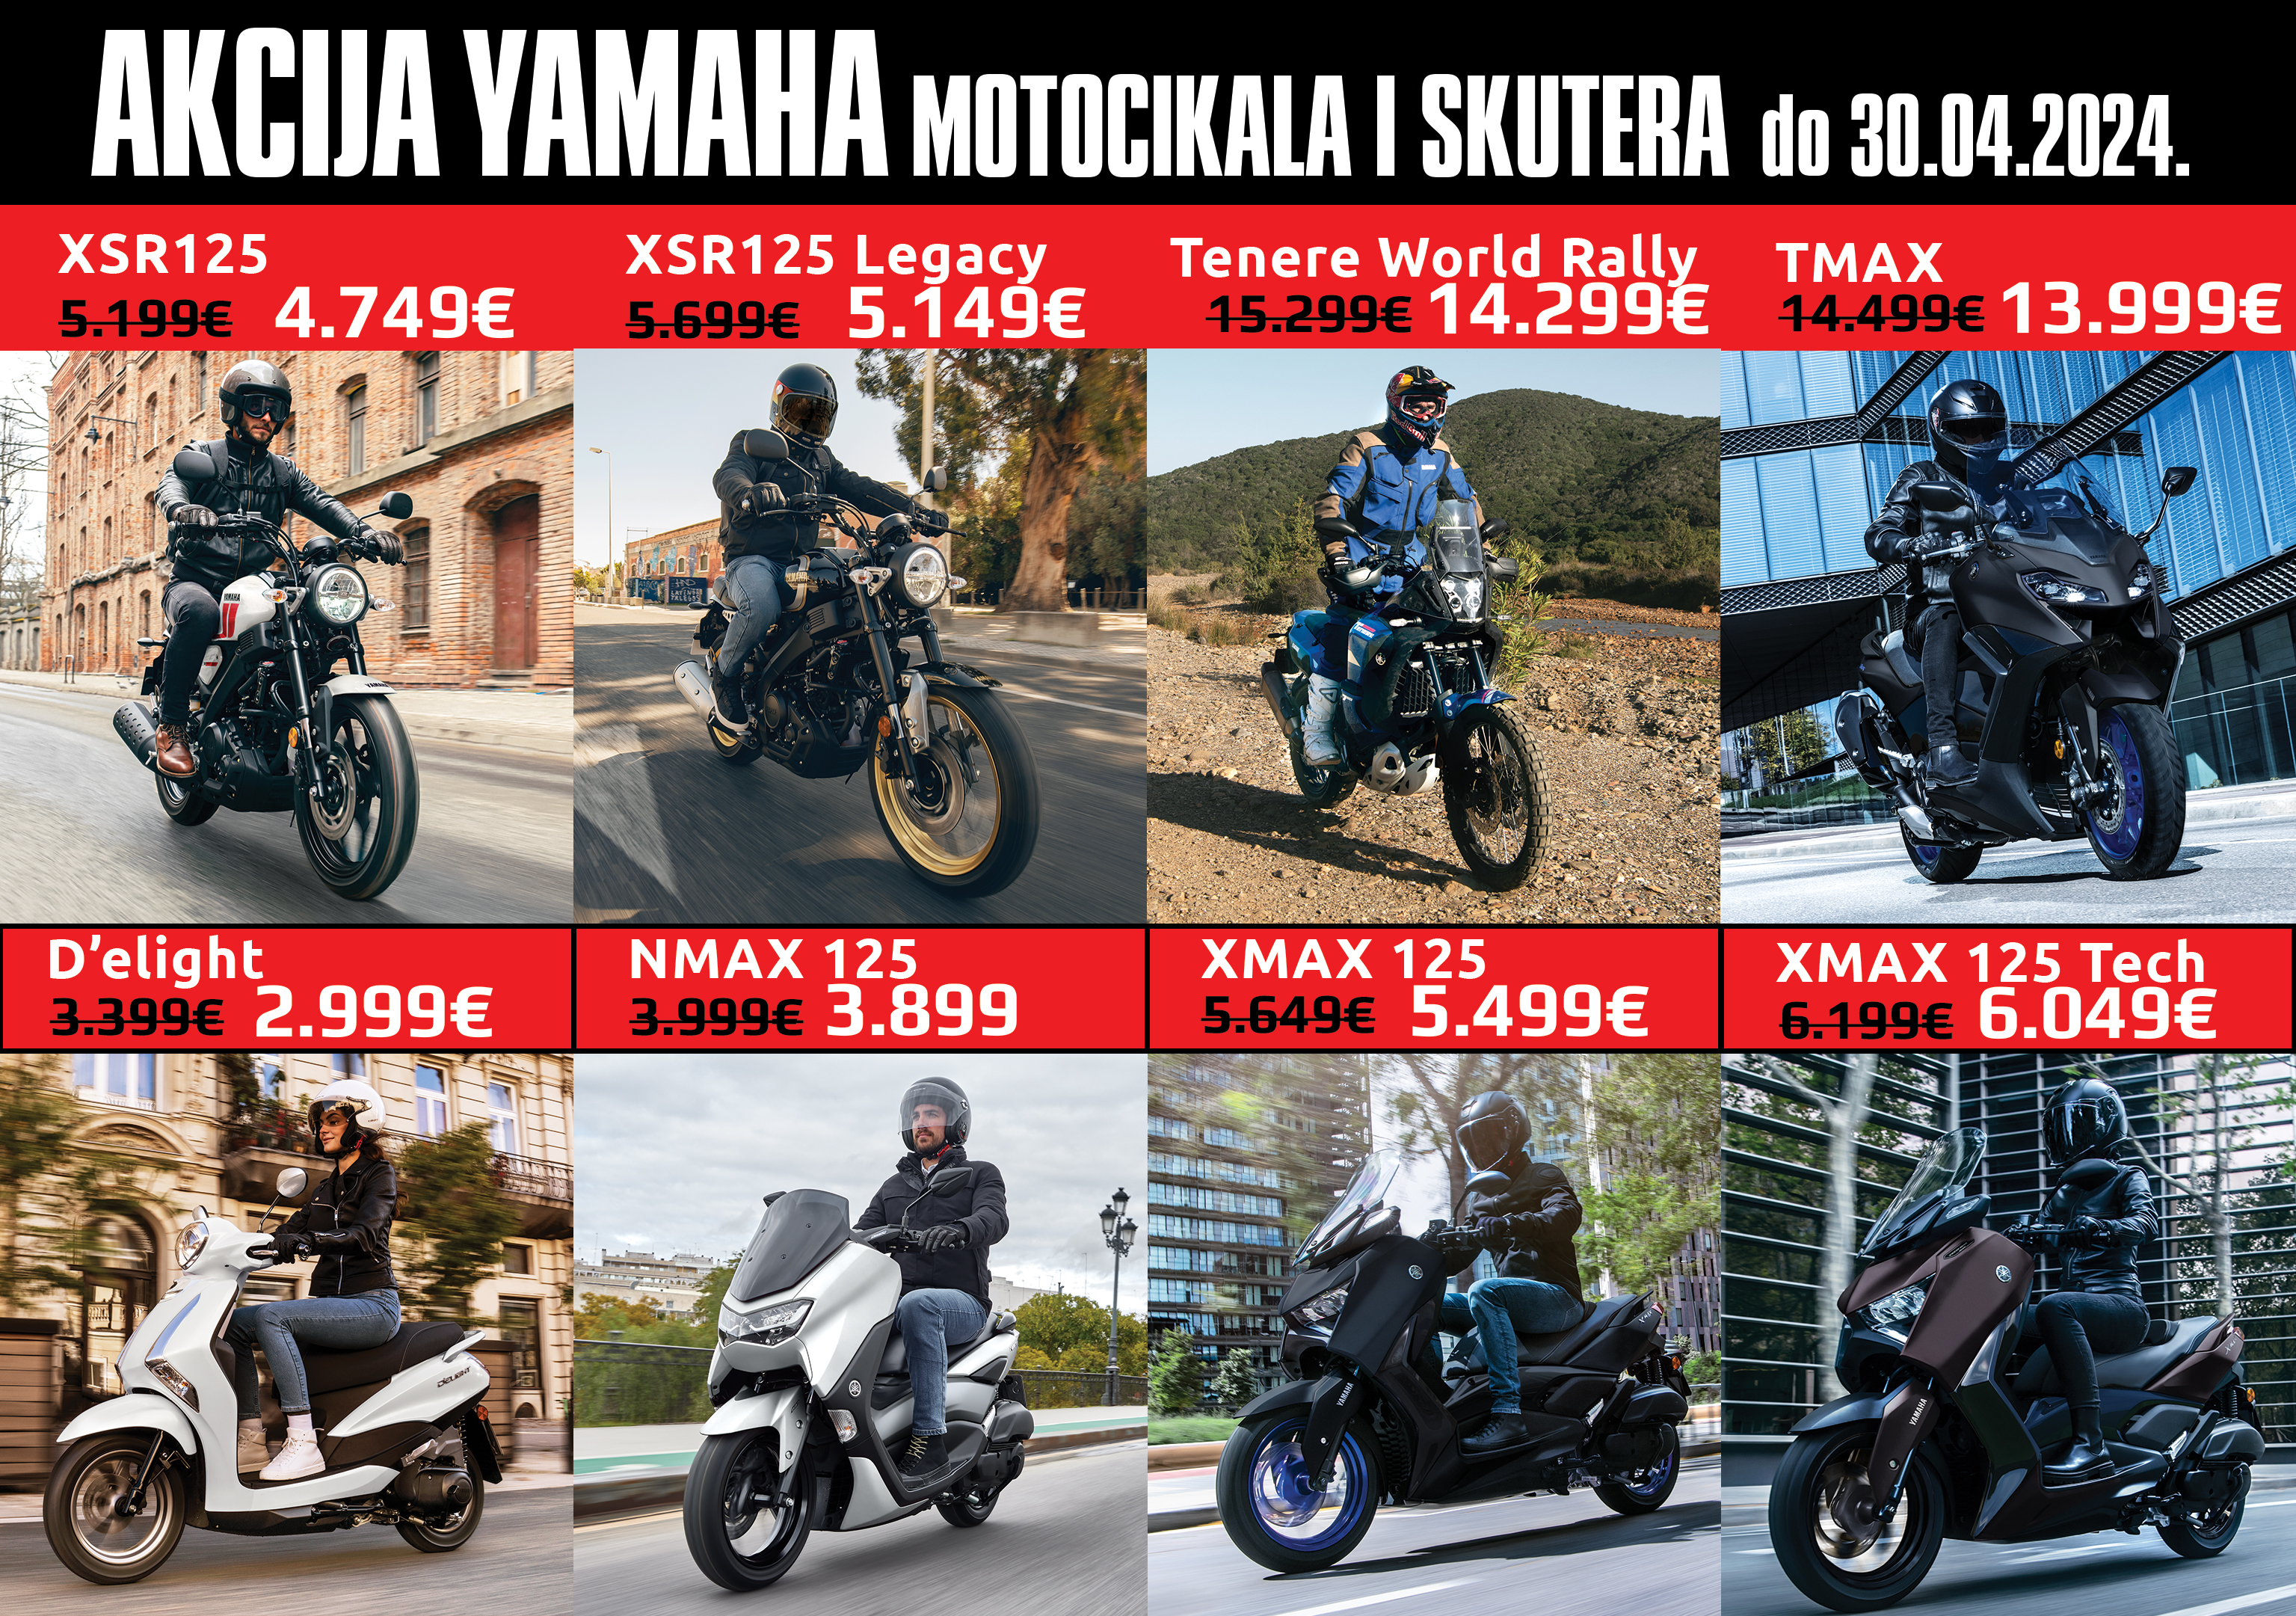 Moto plus Ikica - Yamaha akcija 2024